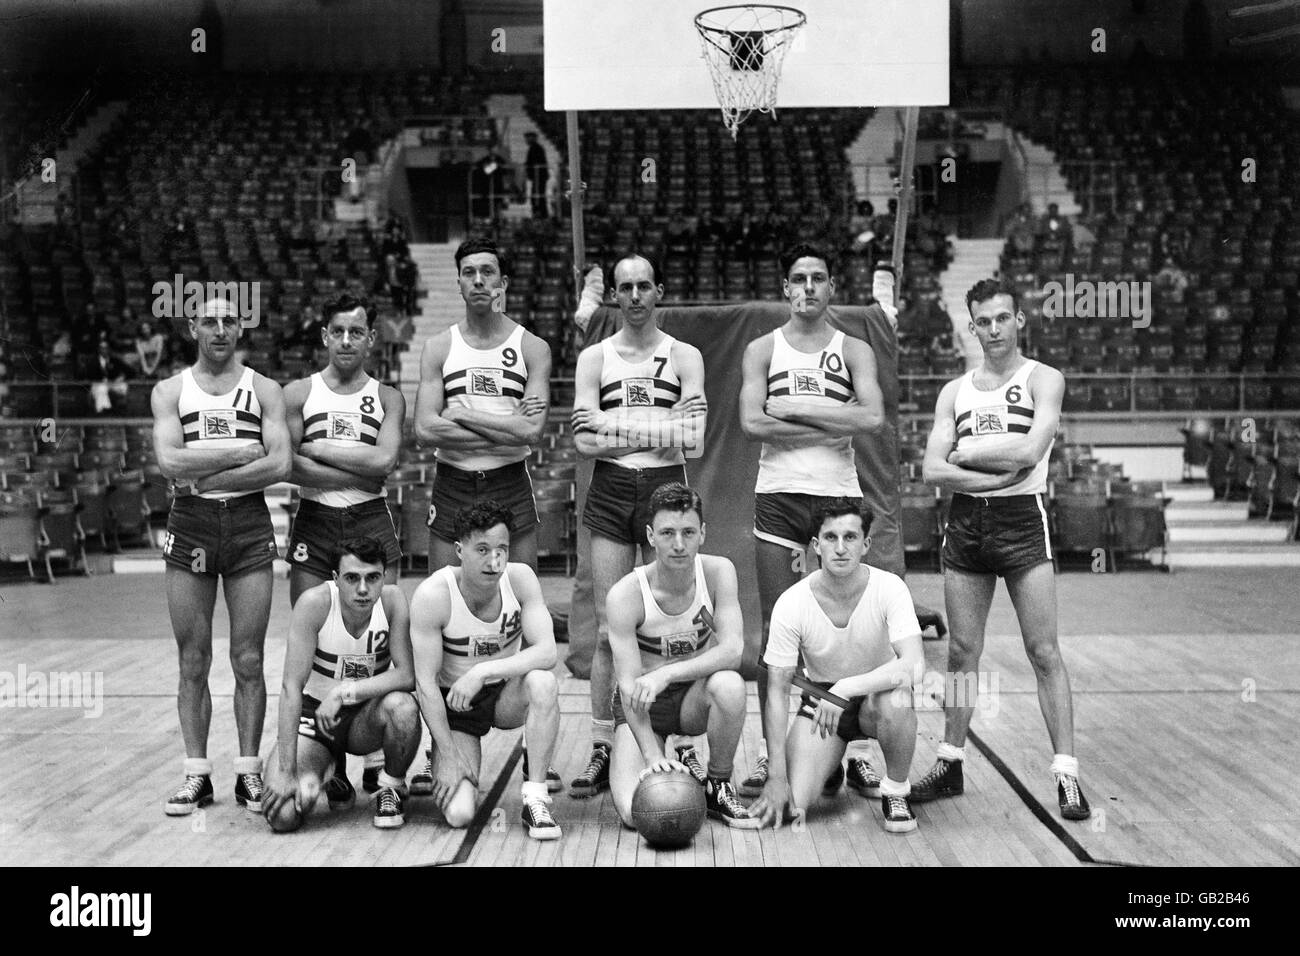 Jeux Olympiques de Londres 1948 - Basketball - Harringay. L'équipe britannique de basket-ball. Banque D'Images